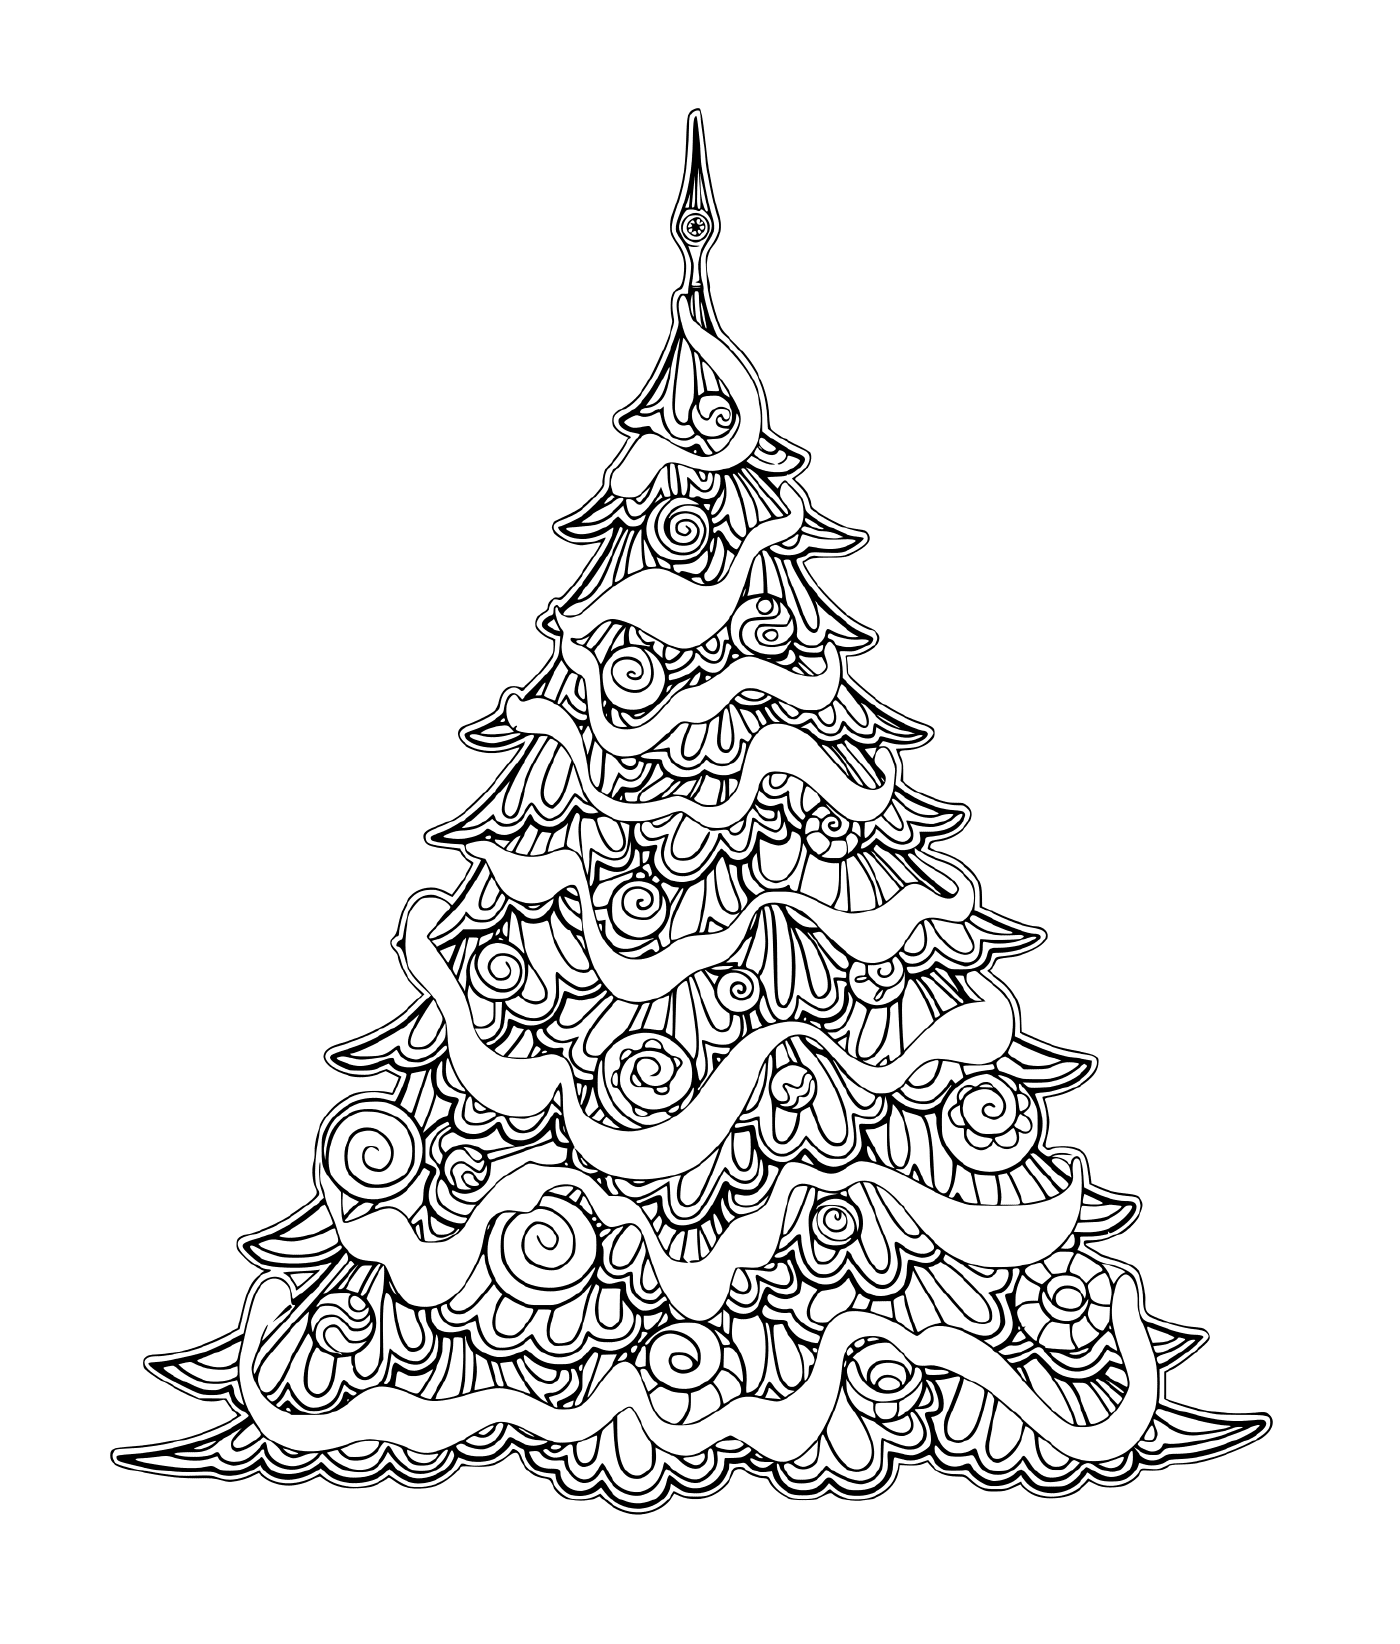  Lujoso árbol de Navidad con decoraciones 